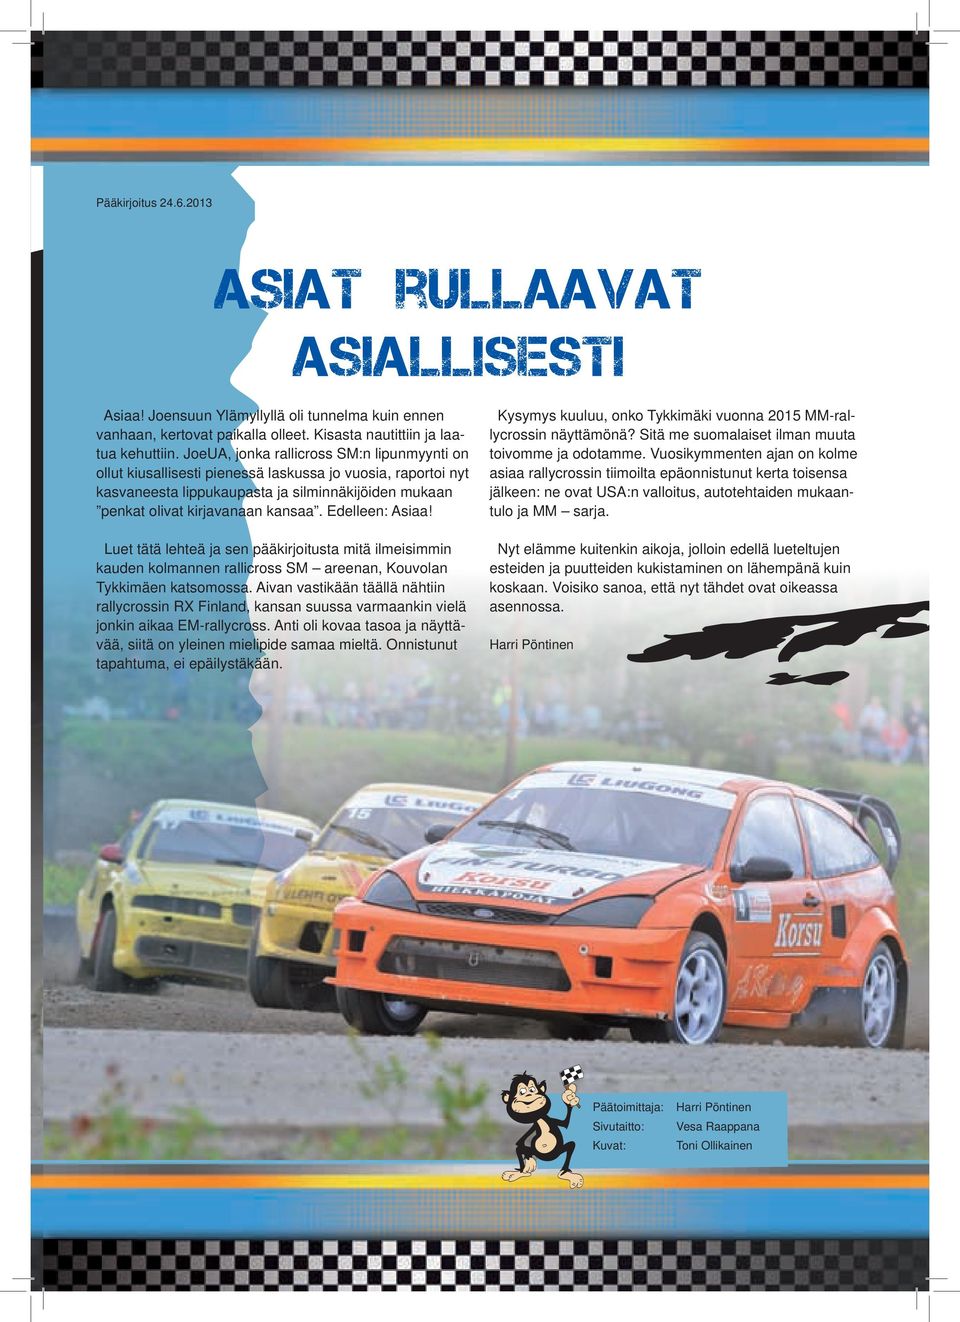 Edelleen: Asiaa! Luet tätä lehteä ja sen pääkirjoitusta mitä ilmeisimmin kauden kolmannen rallicross SM areenan, Kouvolan Tykkimäen katsomossa.